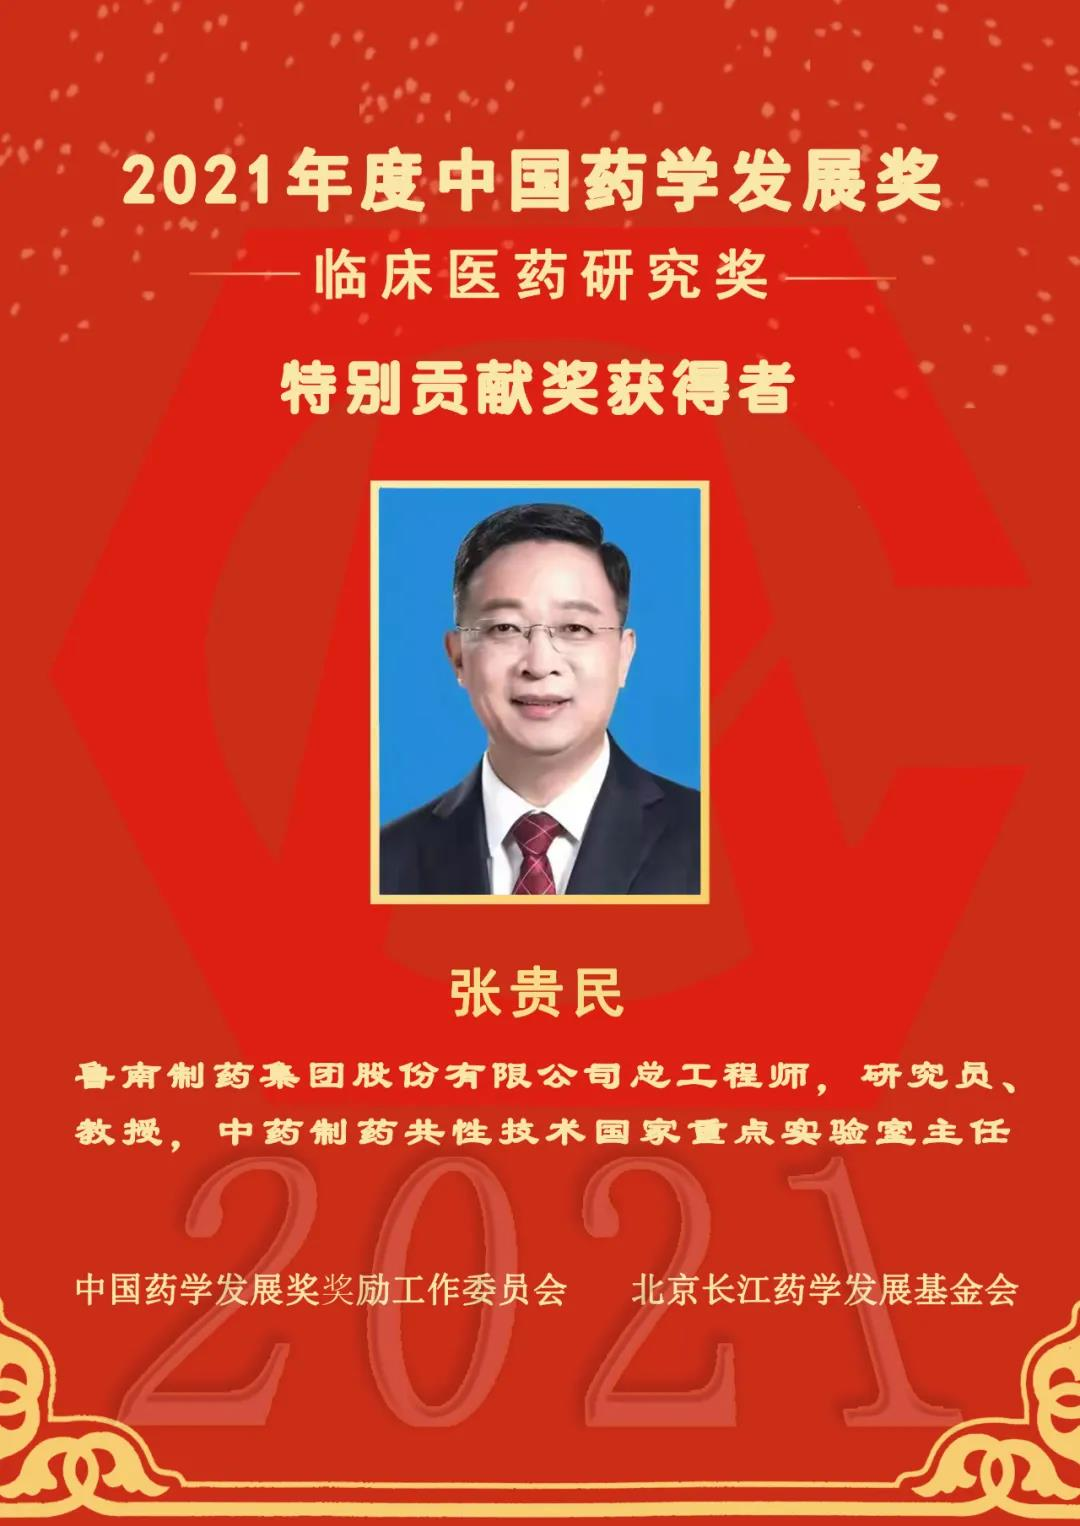 张贵民荣获2021年度中国药学发展奖临床医药研究奖特别贡献奖